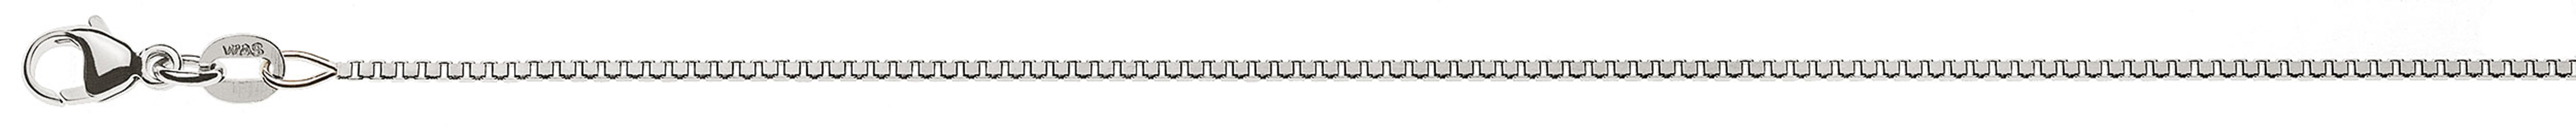 AURONOS Prestige Halskette Weissgold 18K Venezianerkette diamantiert 55cm 1.1mm